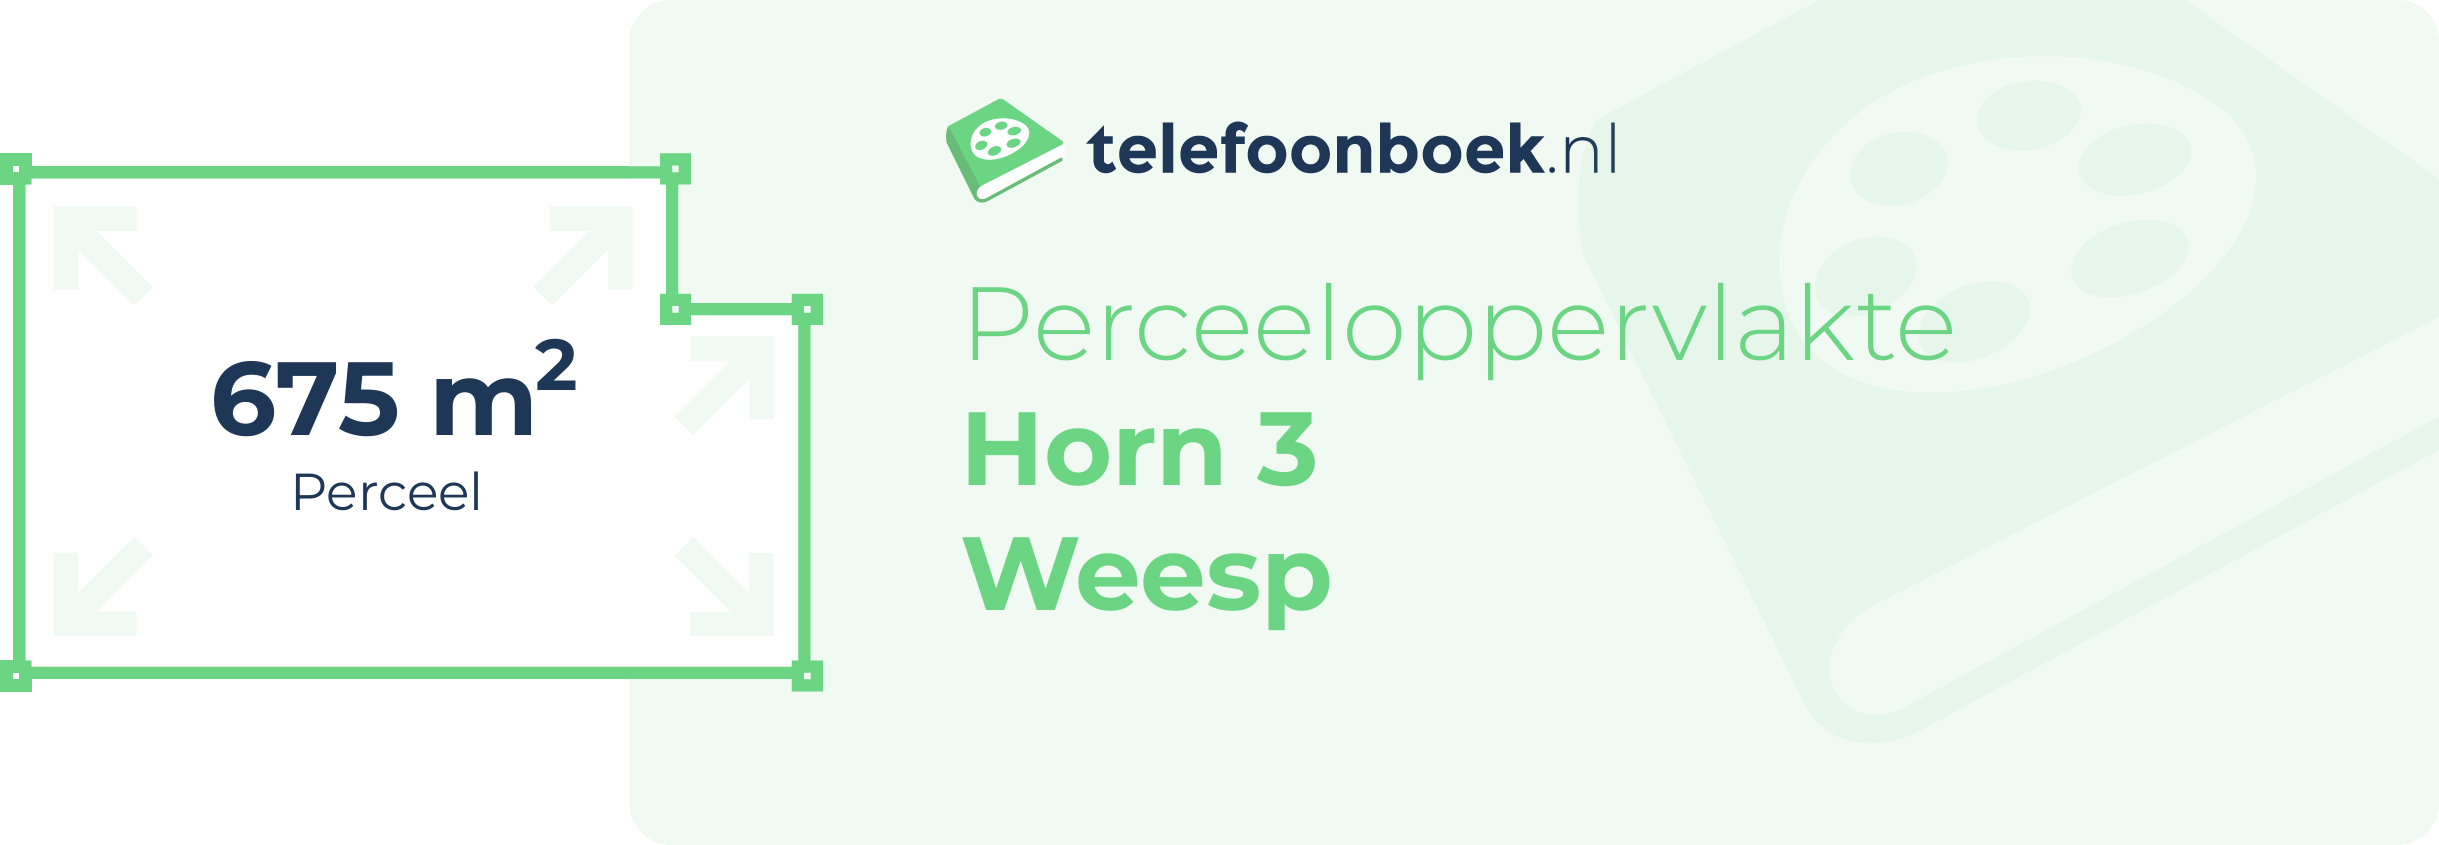 Perceeloppervlakte Horn 3 Weesp